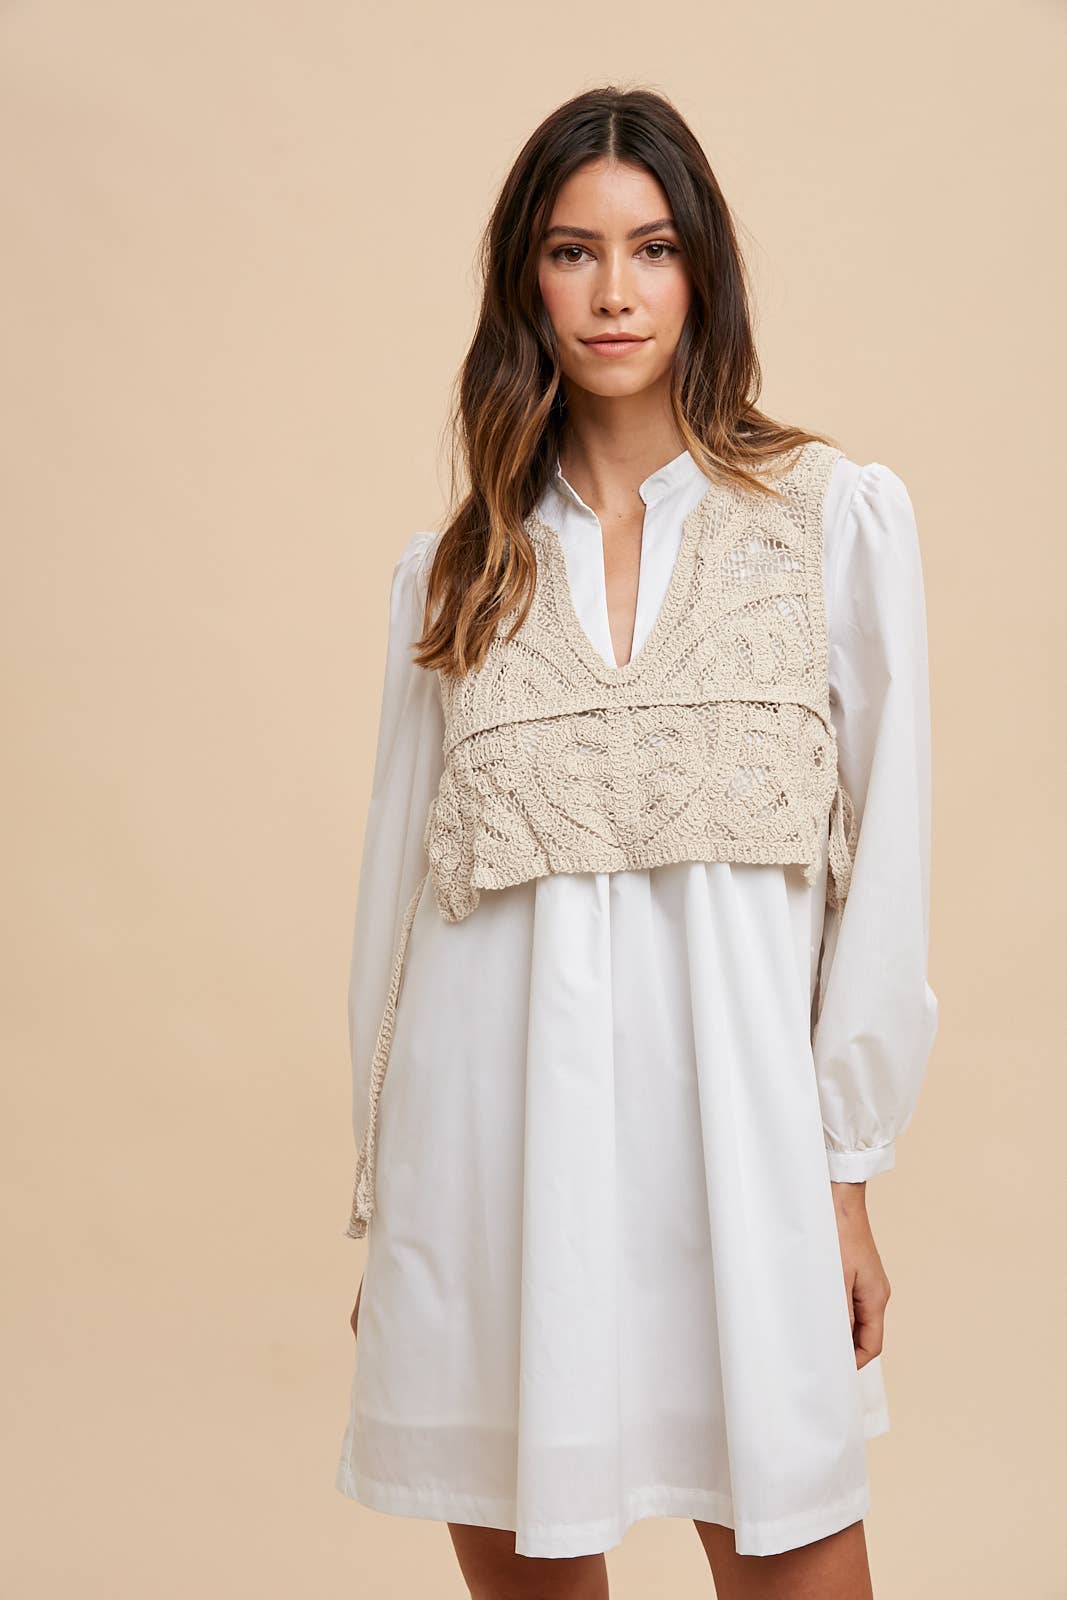 Crochet Vest Shirt Dress - Modish Maven Boutique